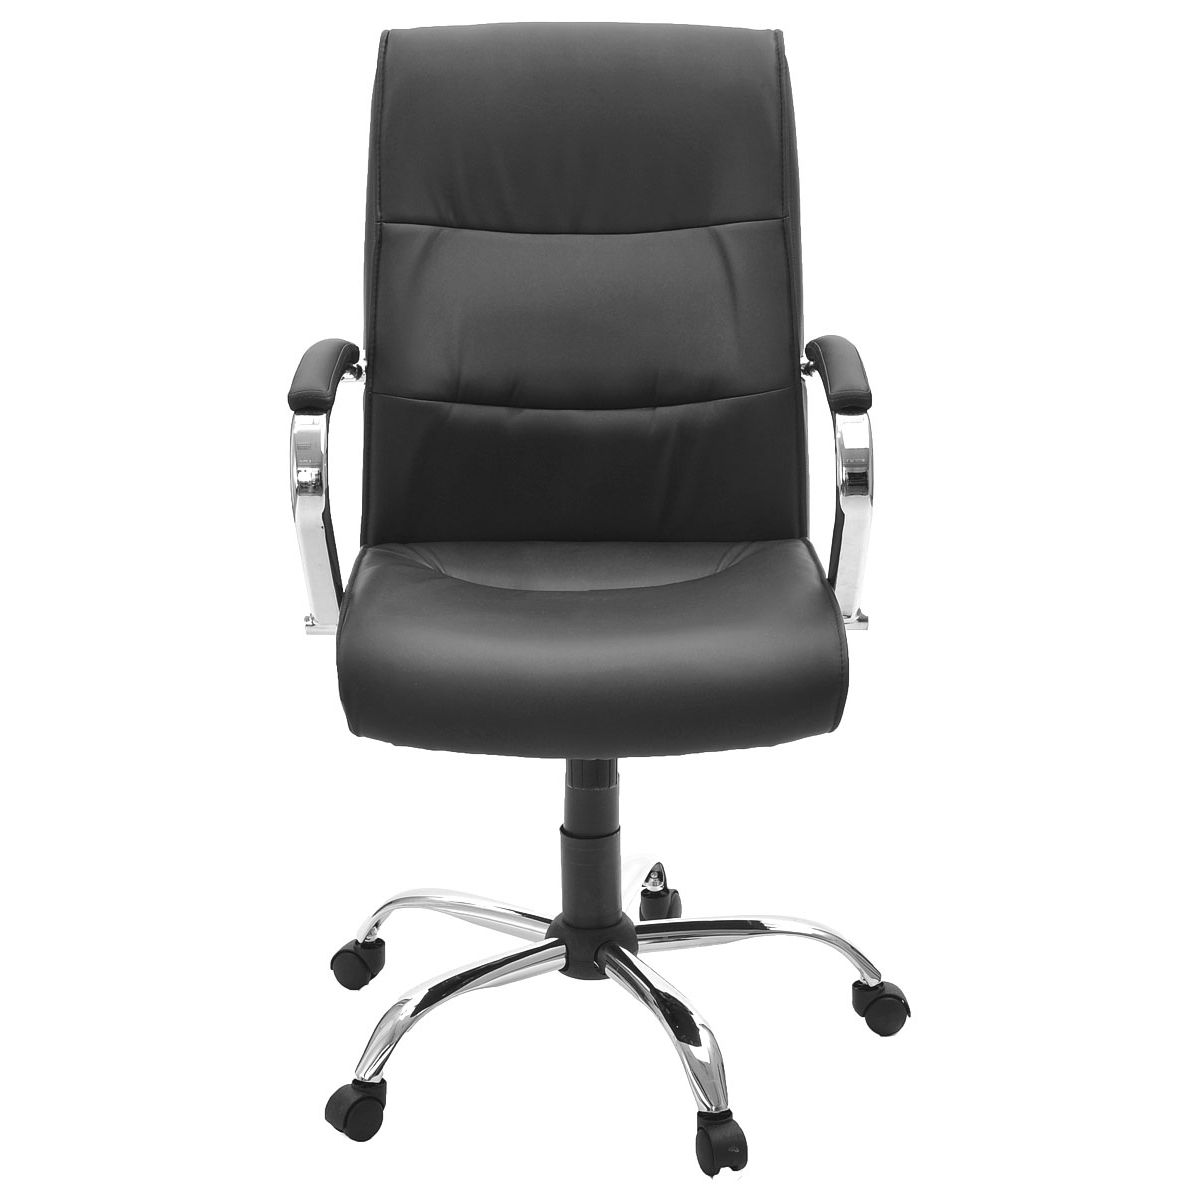 Балун x кресло (кожа иск., Eco, №16н(черный), XCH) объем